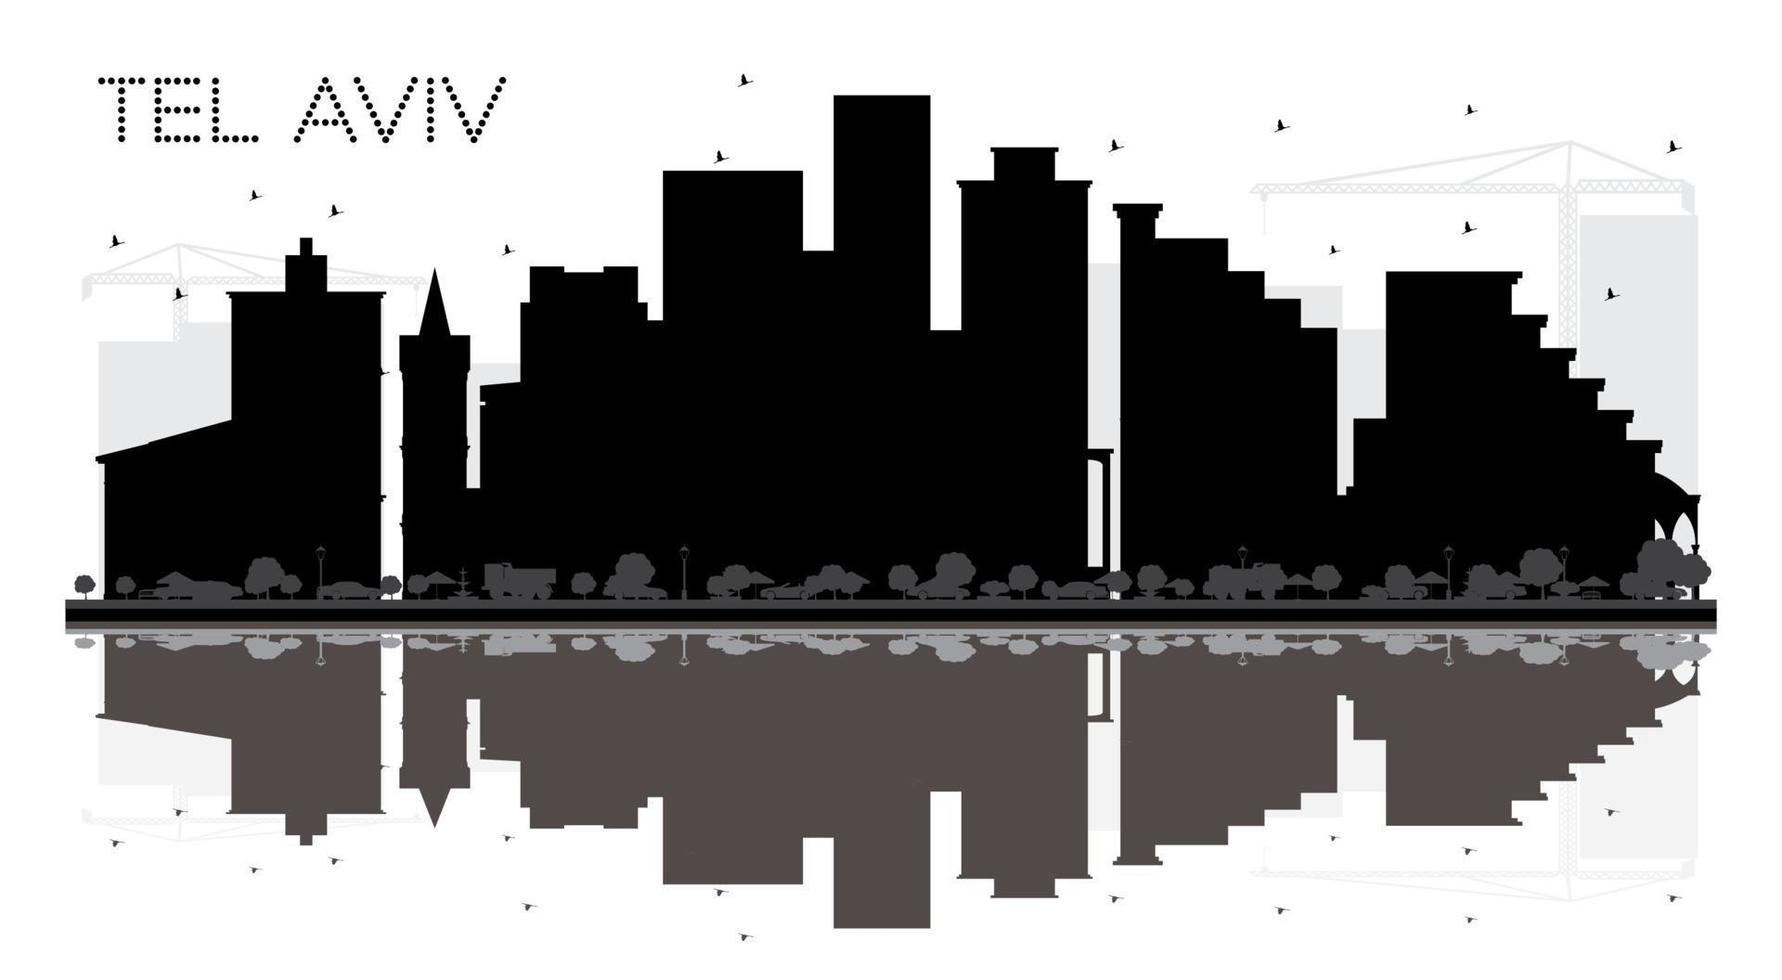 tel aviv israel city skyline schwarz-weiße silhouette mit reflexionen. vektor